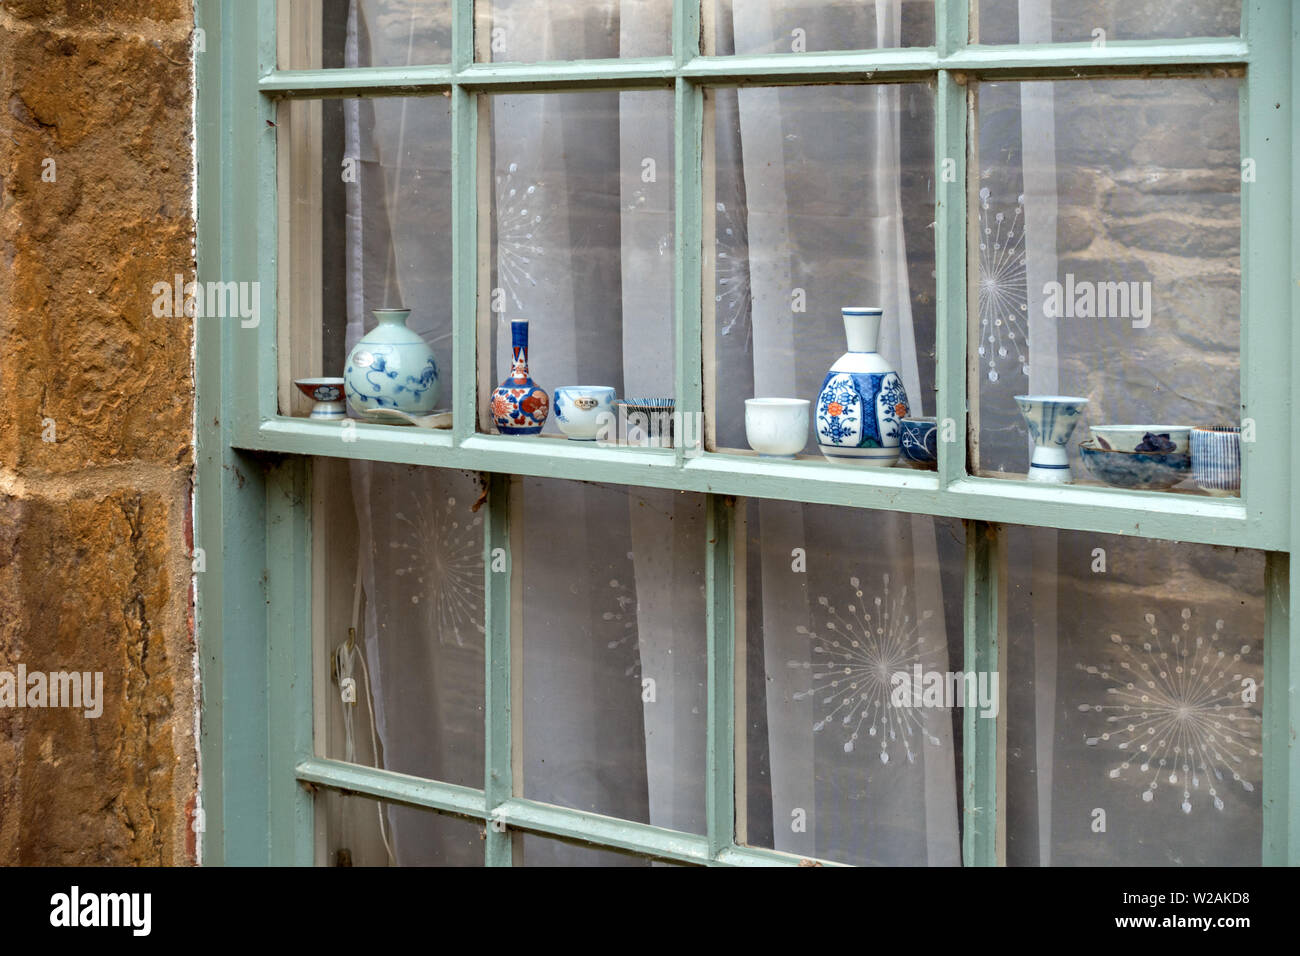 Attraktive Darstellung von Miniatur Porzellan zier Teller, Schalen, Vasen und Töpfe in einer Reihe entlang Schärpe Fensterbänke, Rutland, Großbritannien Stockfoto